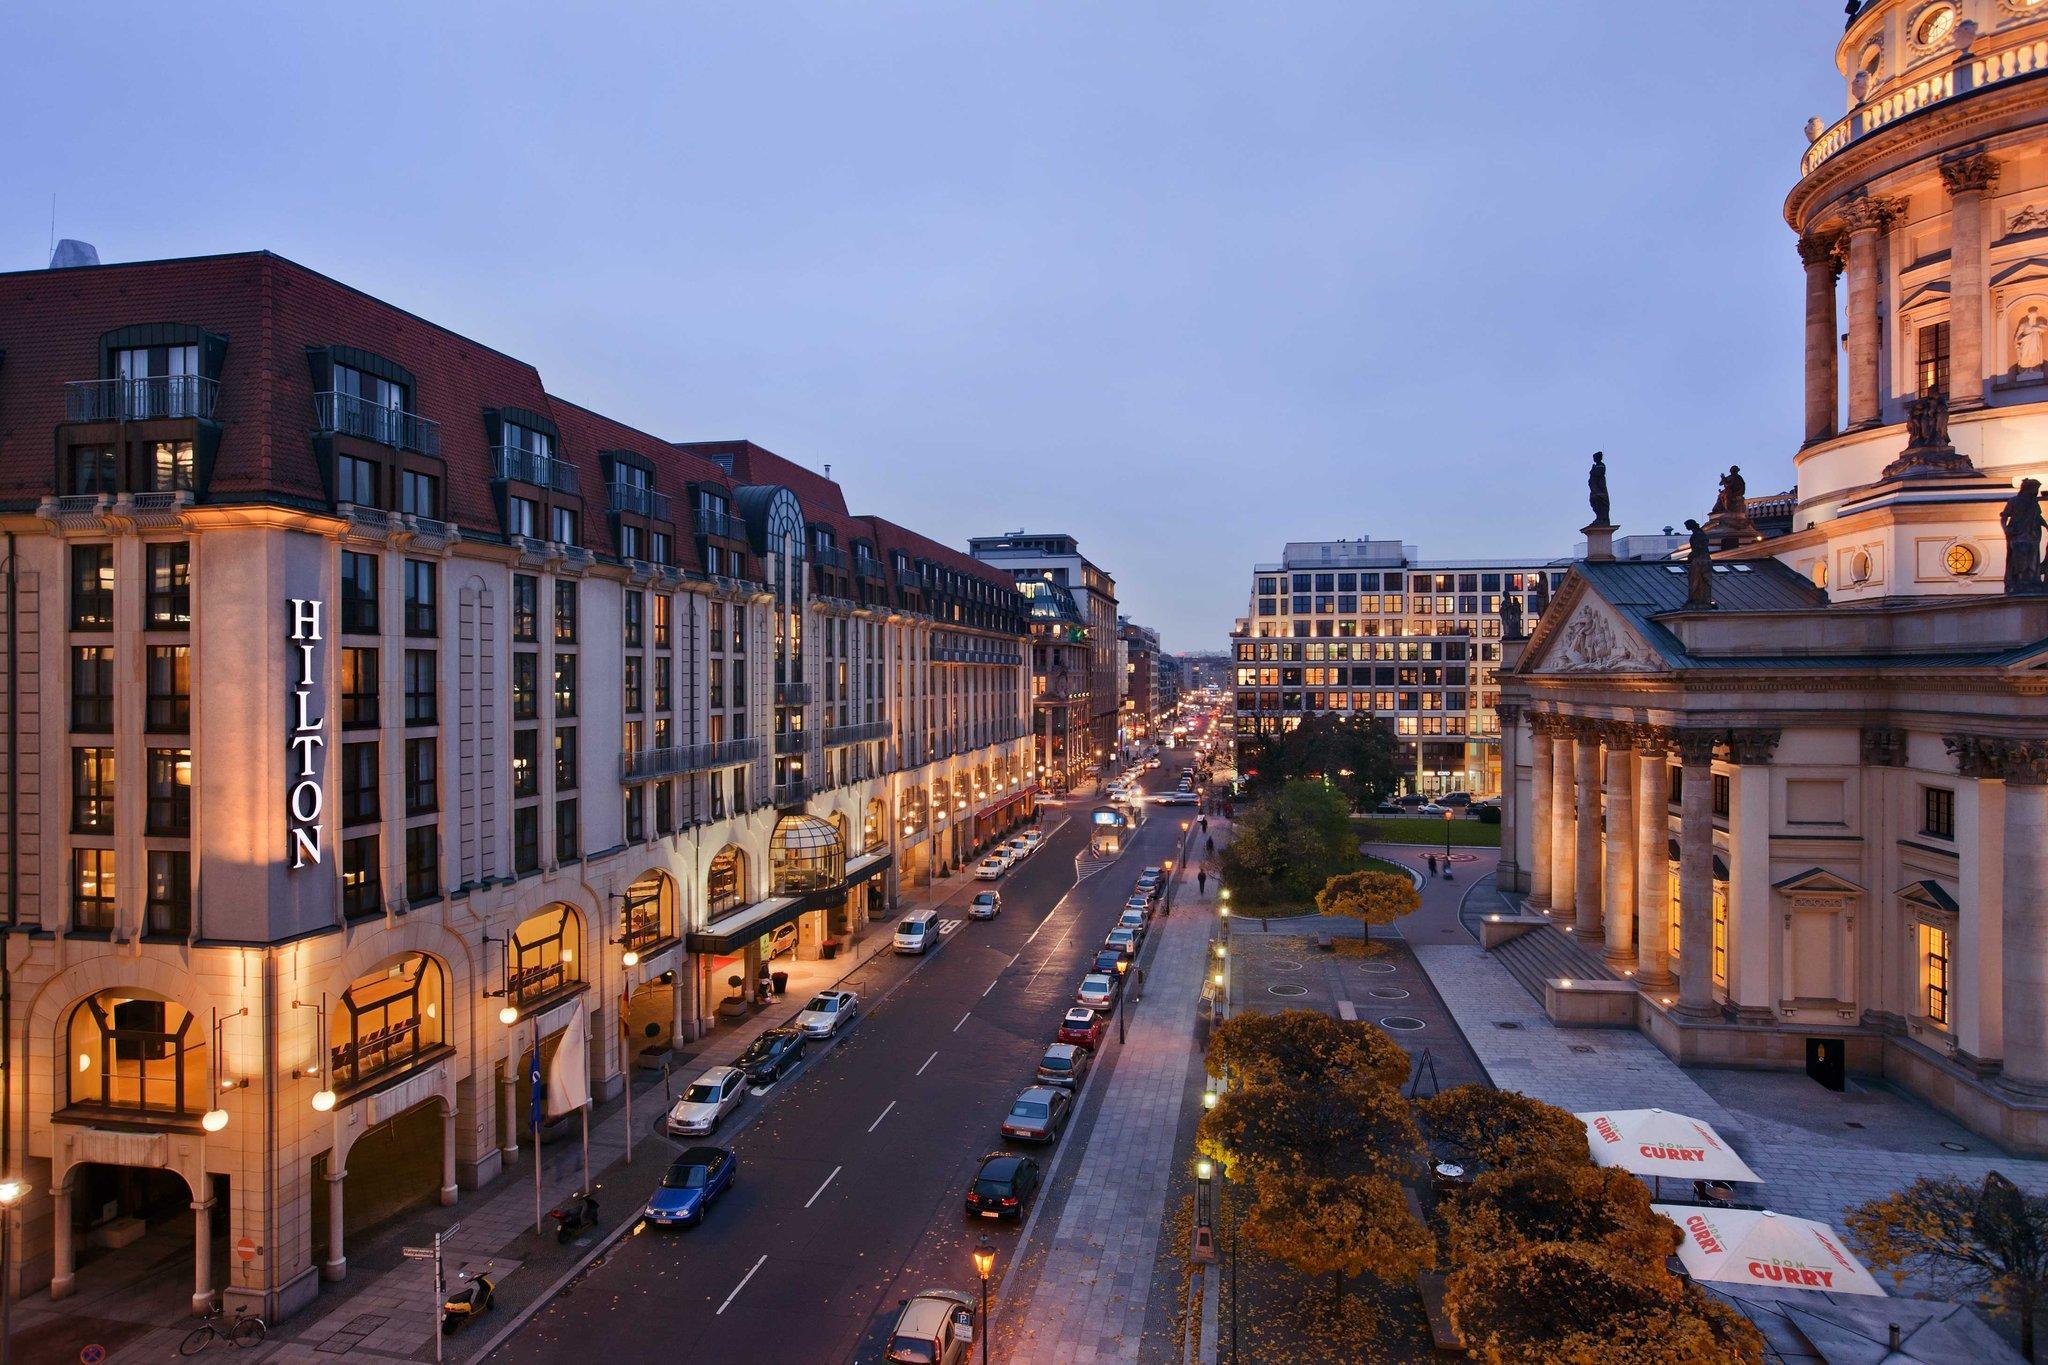 Photo of Hilton Berlin, Berlin, Germany